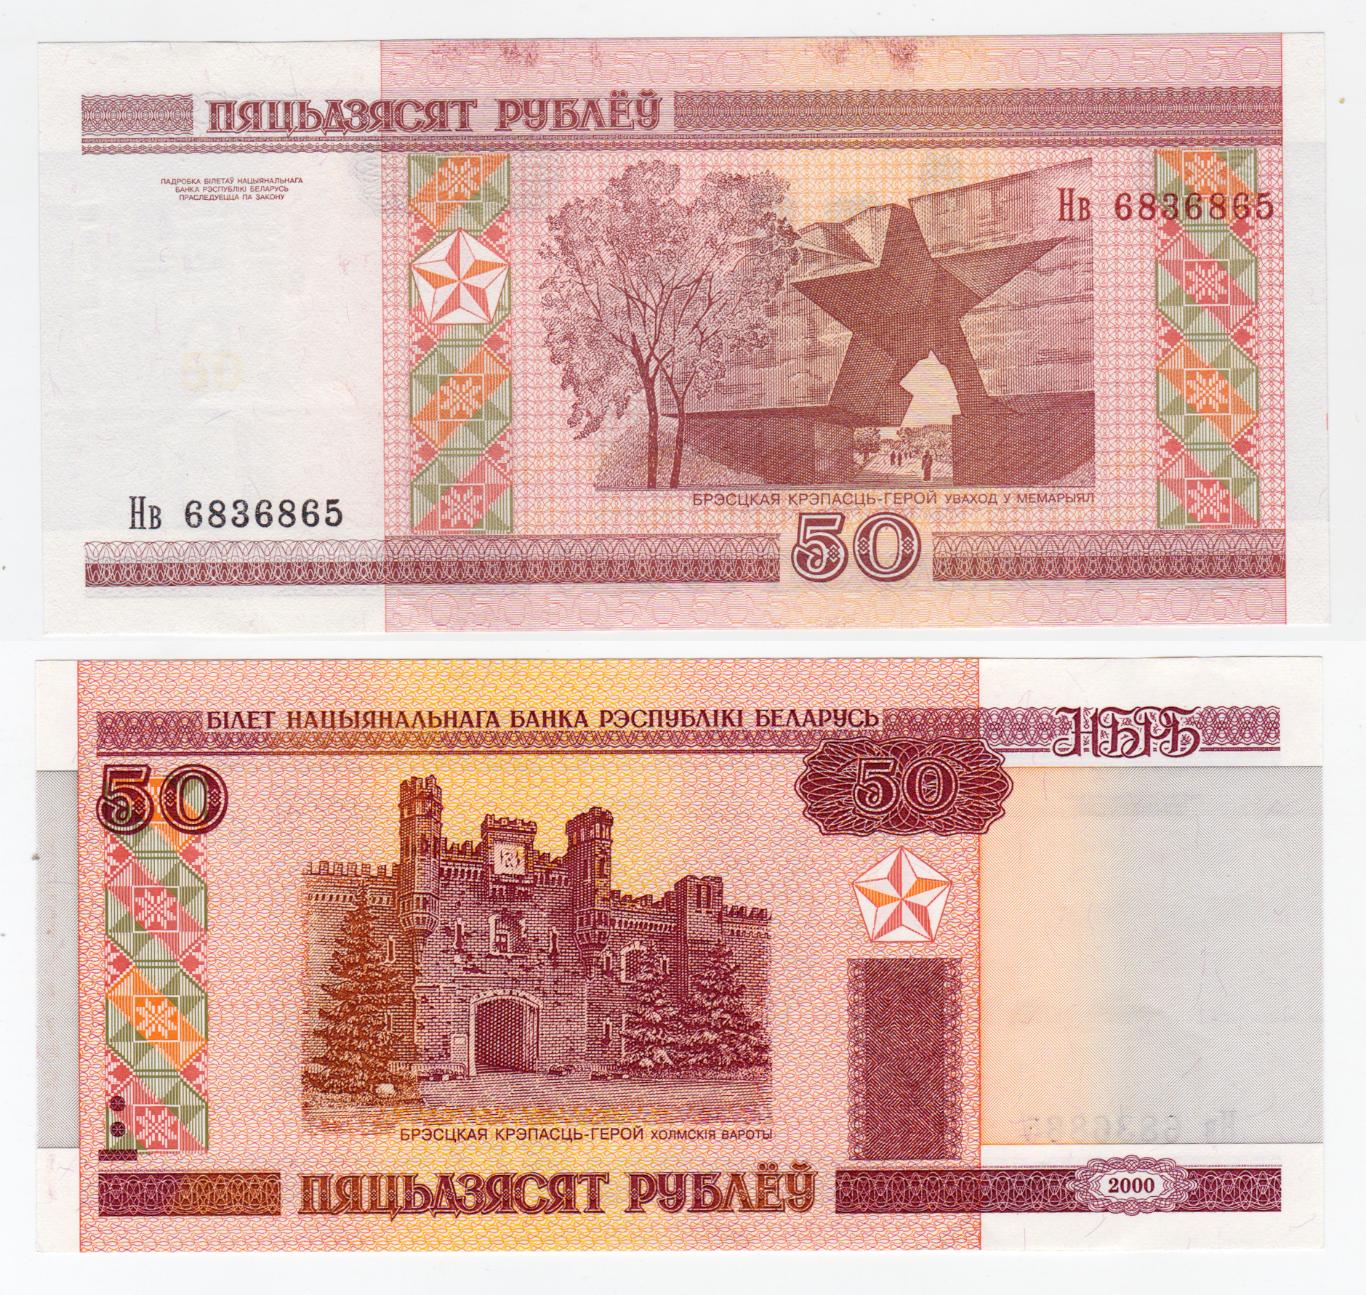 Беларусь 50 рублей 2000 aUNC - UNC